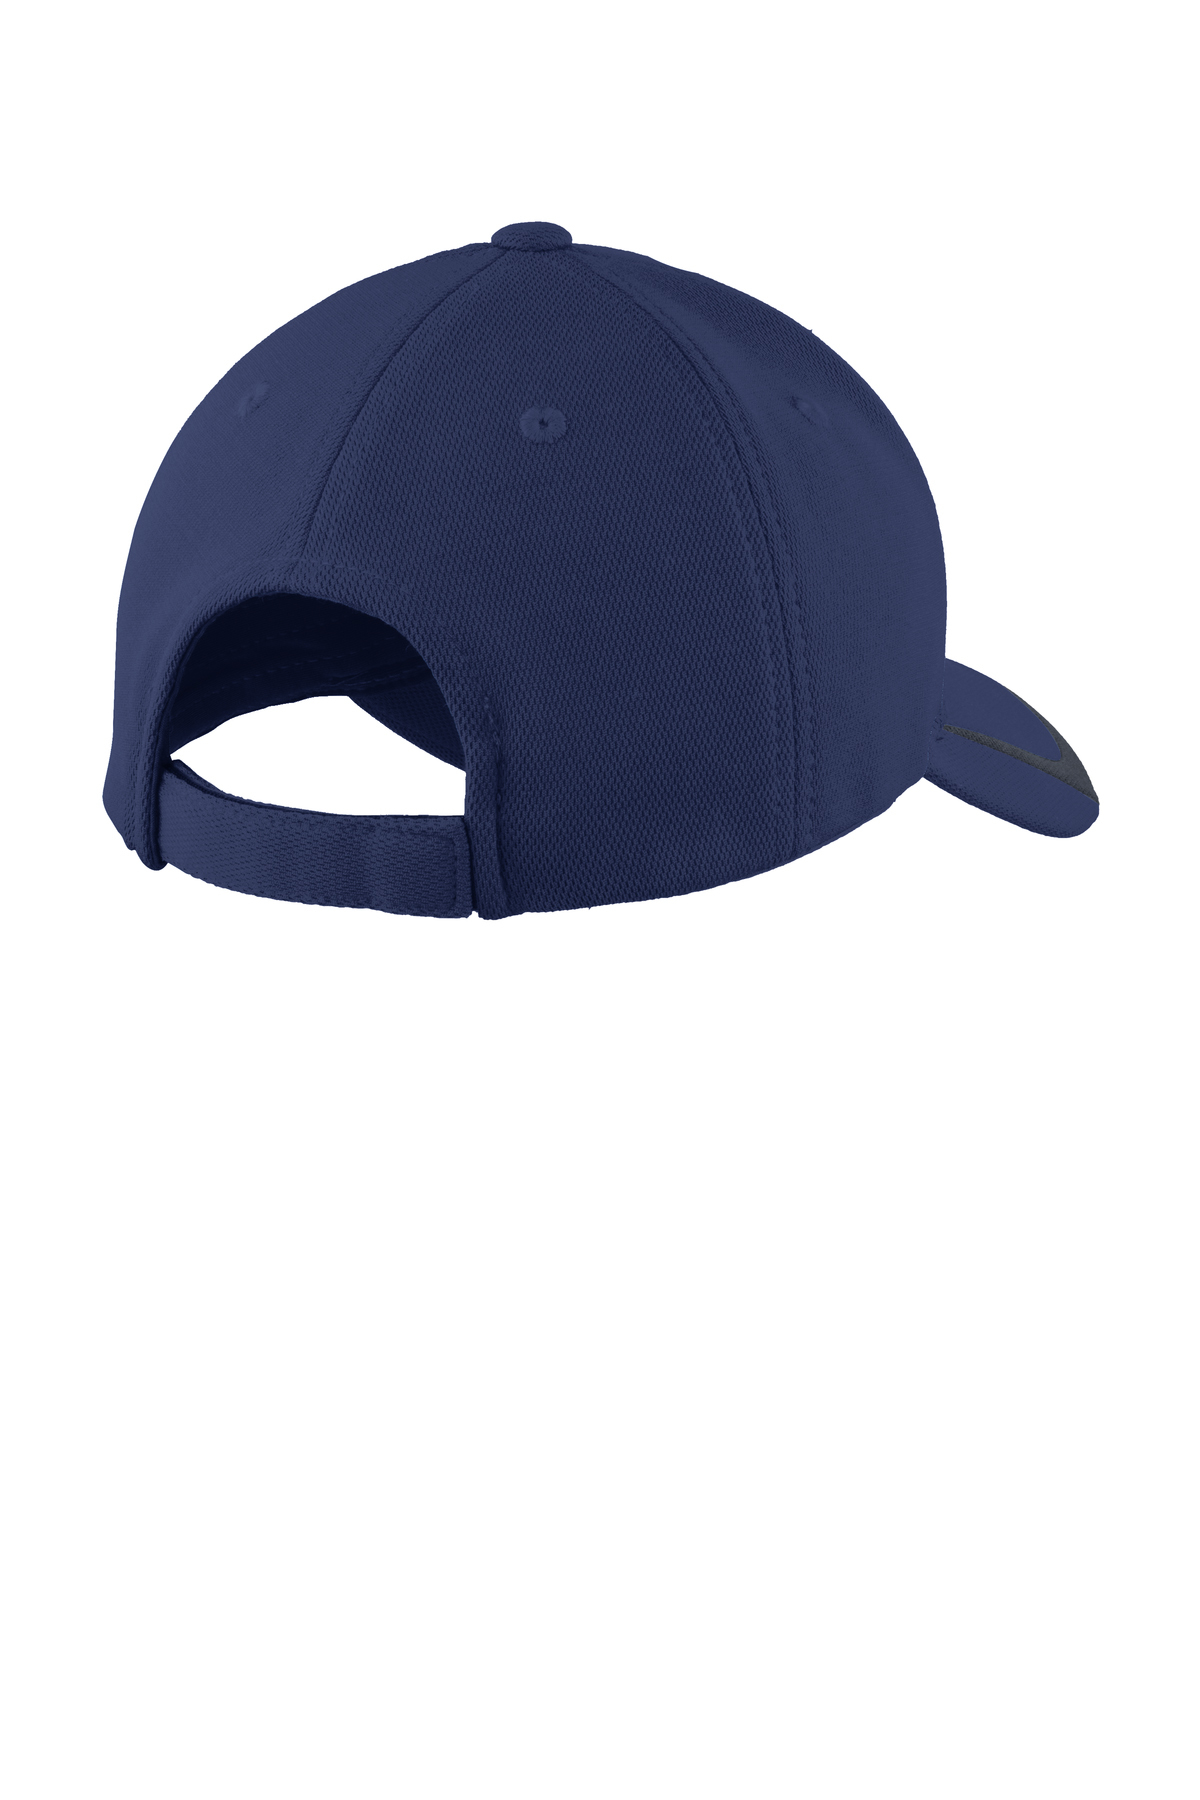 Sport-Tek ® Pique Colorblock Cap | Product | SanMar